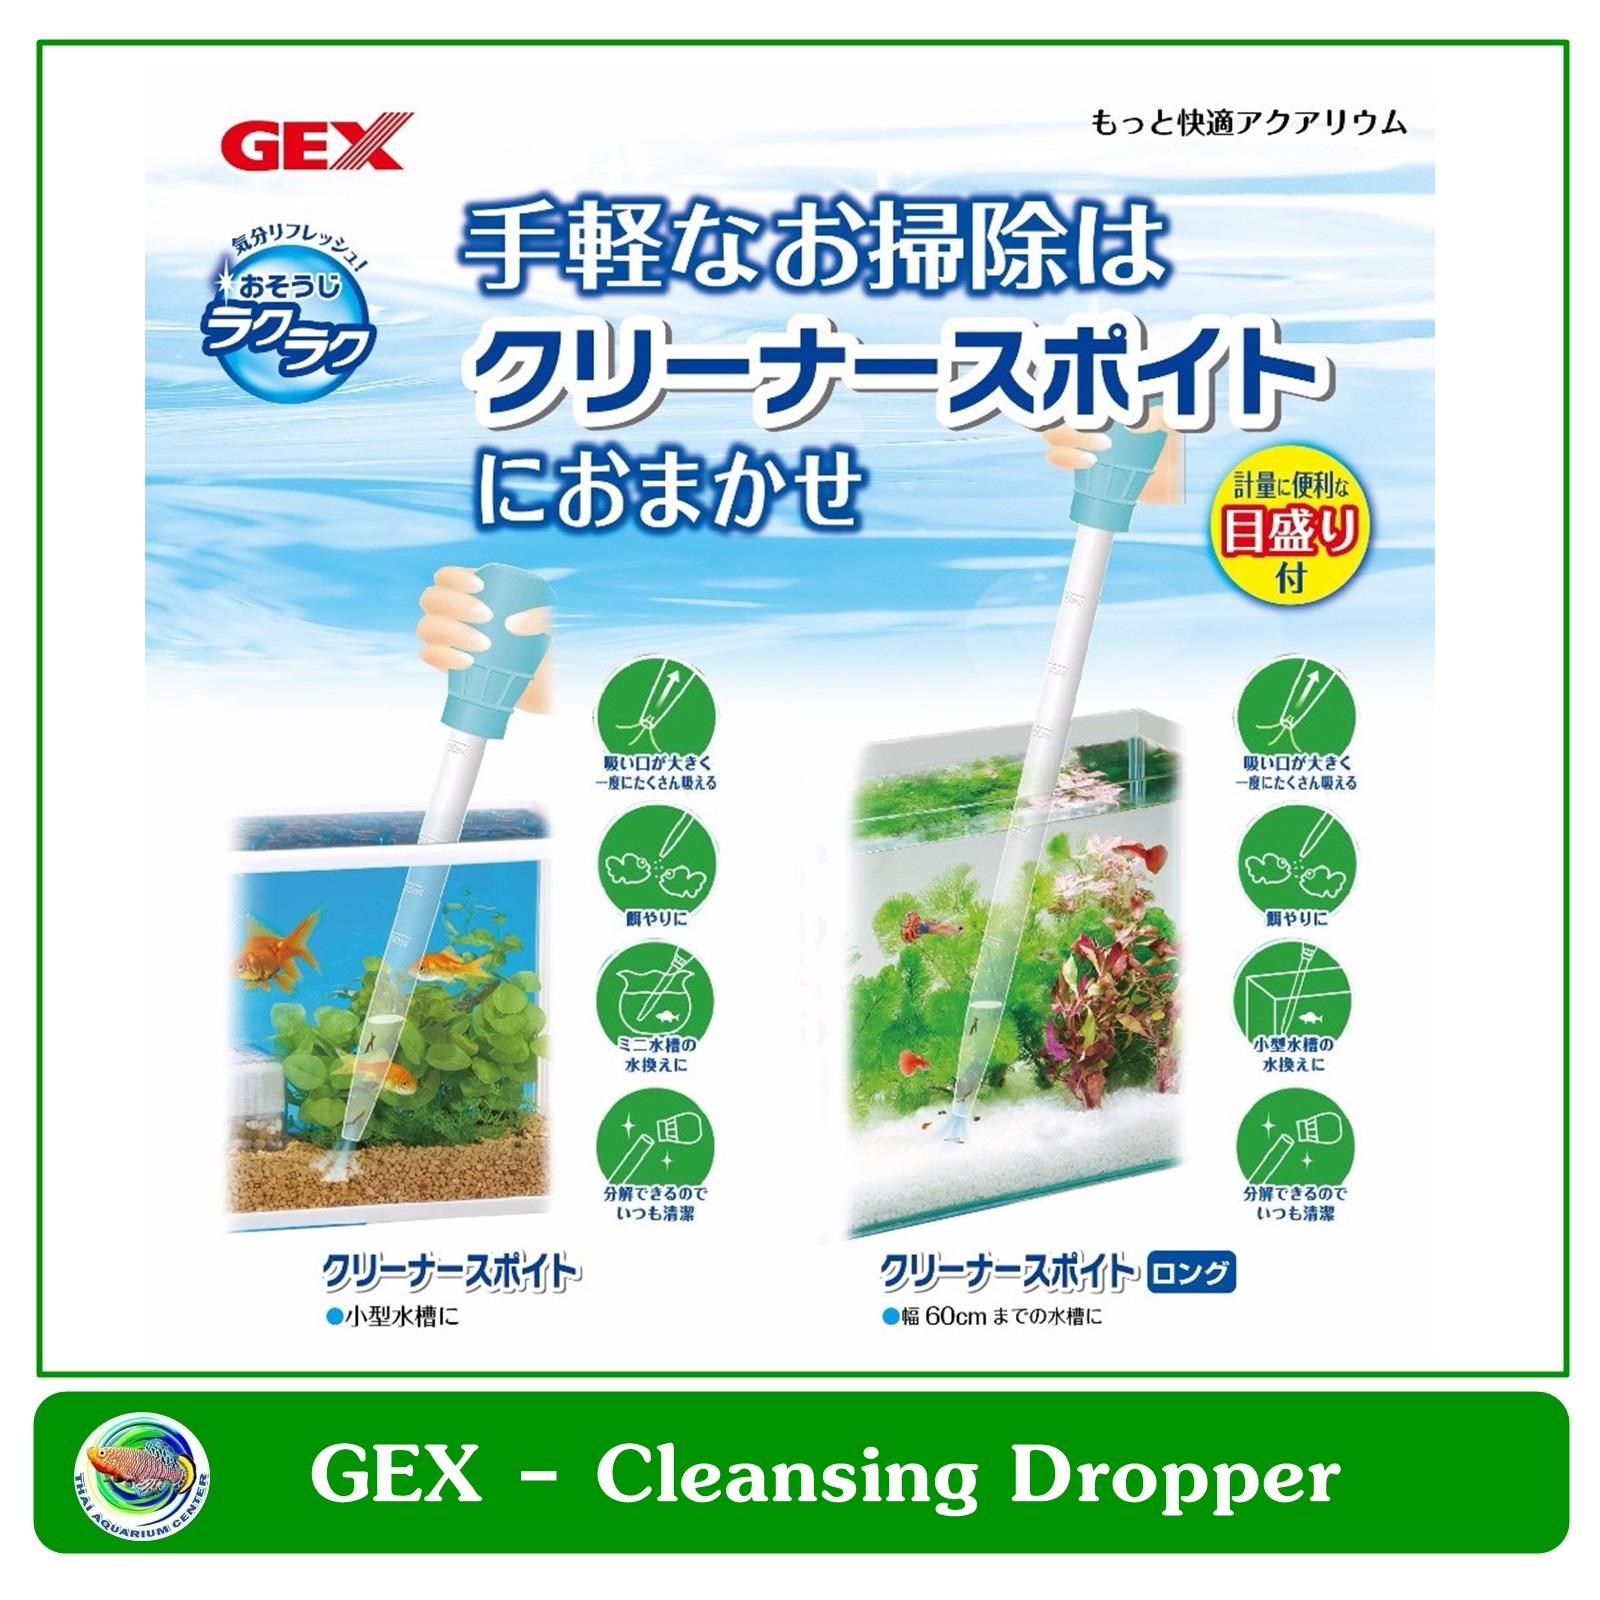 ขาย Gex Easy Cleaning Dropper หลอดดูดเศษอาหารปํ๊มลูกยาง สำหรับตู้ปลา อ่างปลา สูงไม่เกิน 36 ซม.